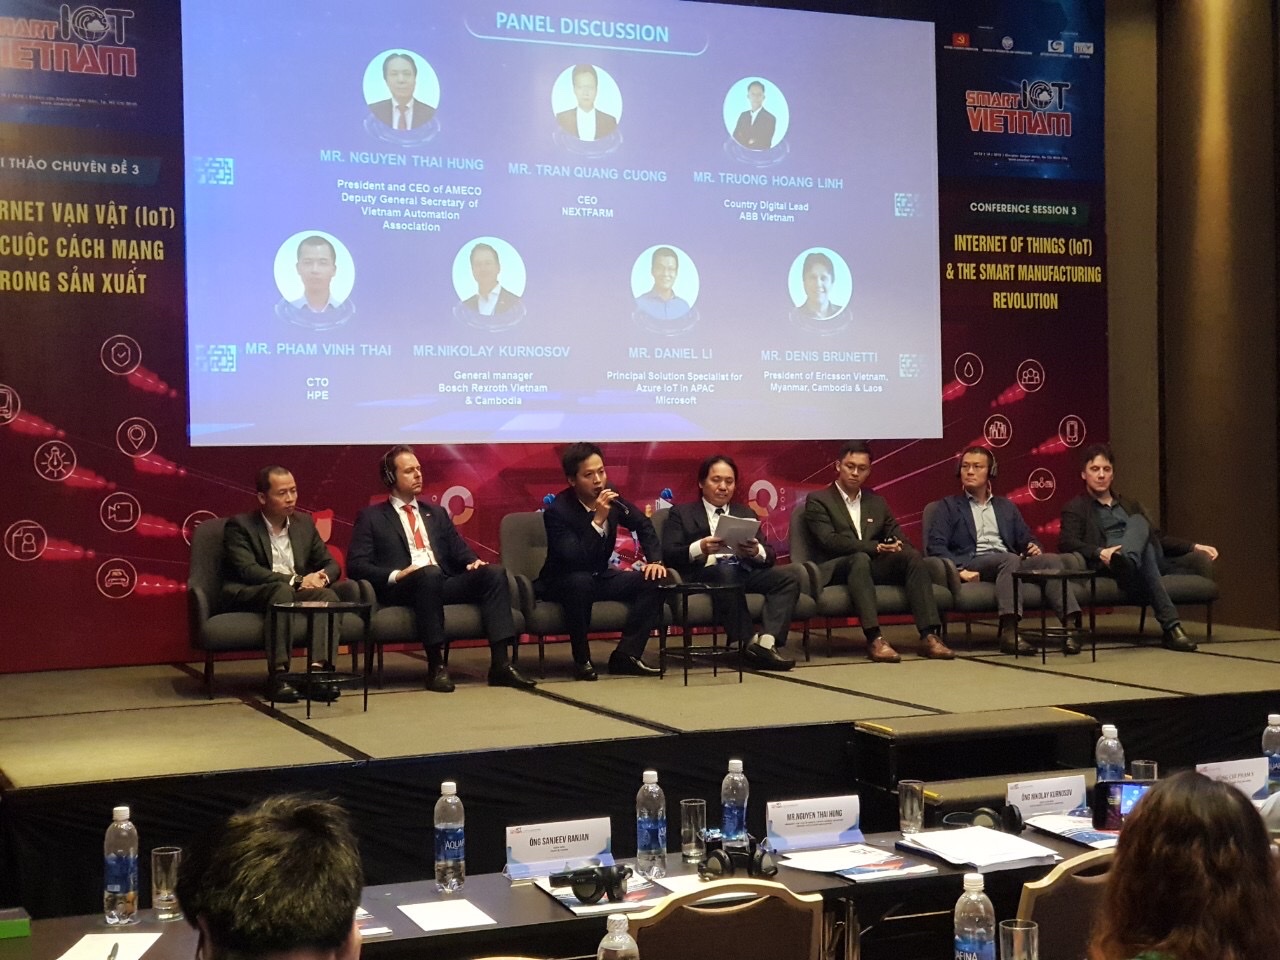 CEO NextVision tại Hội thảo và Triển lãm quốc tế Smart IoT Việt Nam: “Doanh nghiệp Công nghệ Việt Nam chúng tôi hoàn toàn có thể làm các sản phẩm công nghệ tương đương hoặc thậm chí hơn nước ngoài nếu tập trung”